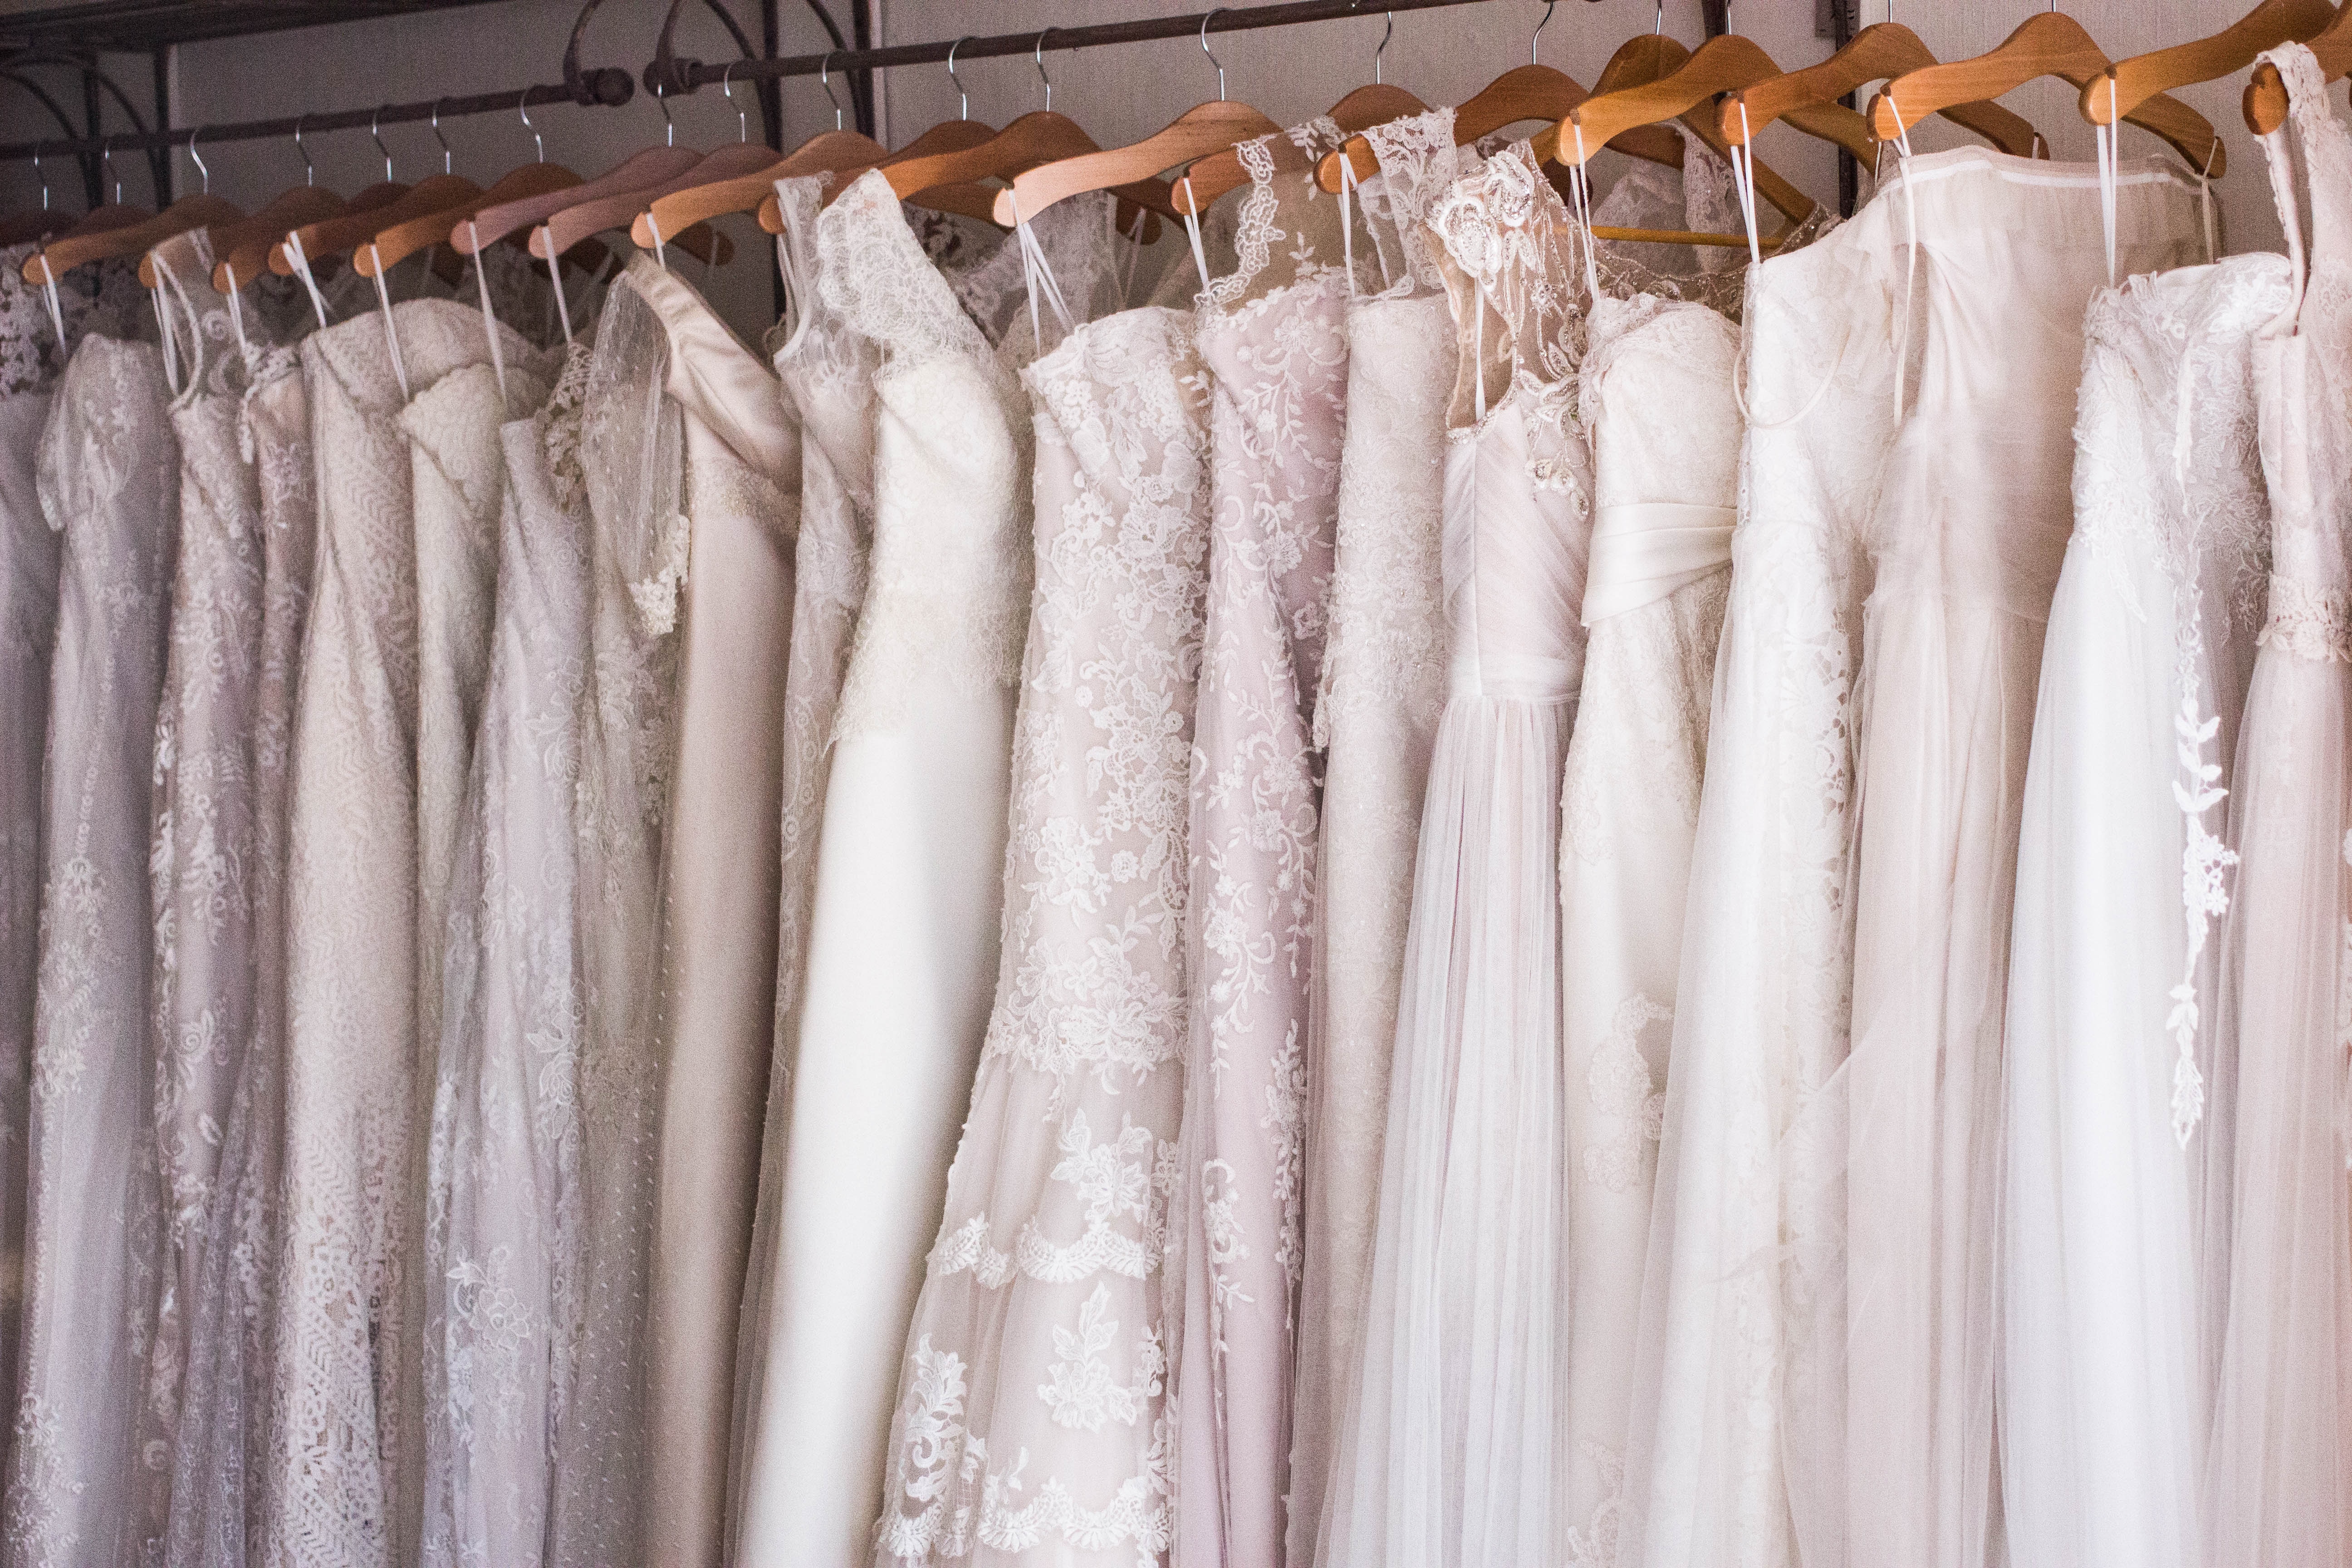 Le 10 cose da fare dopo aver comprato l’abito da sposa